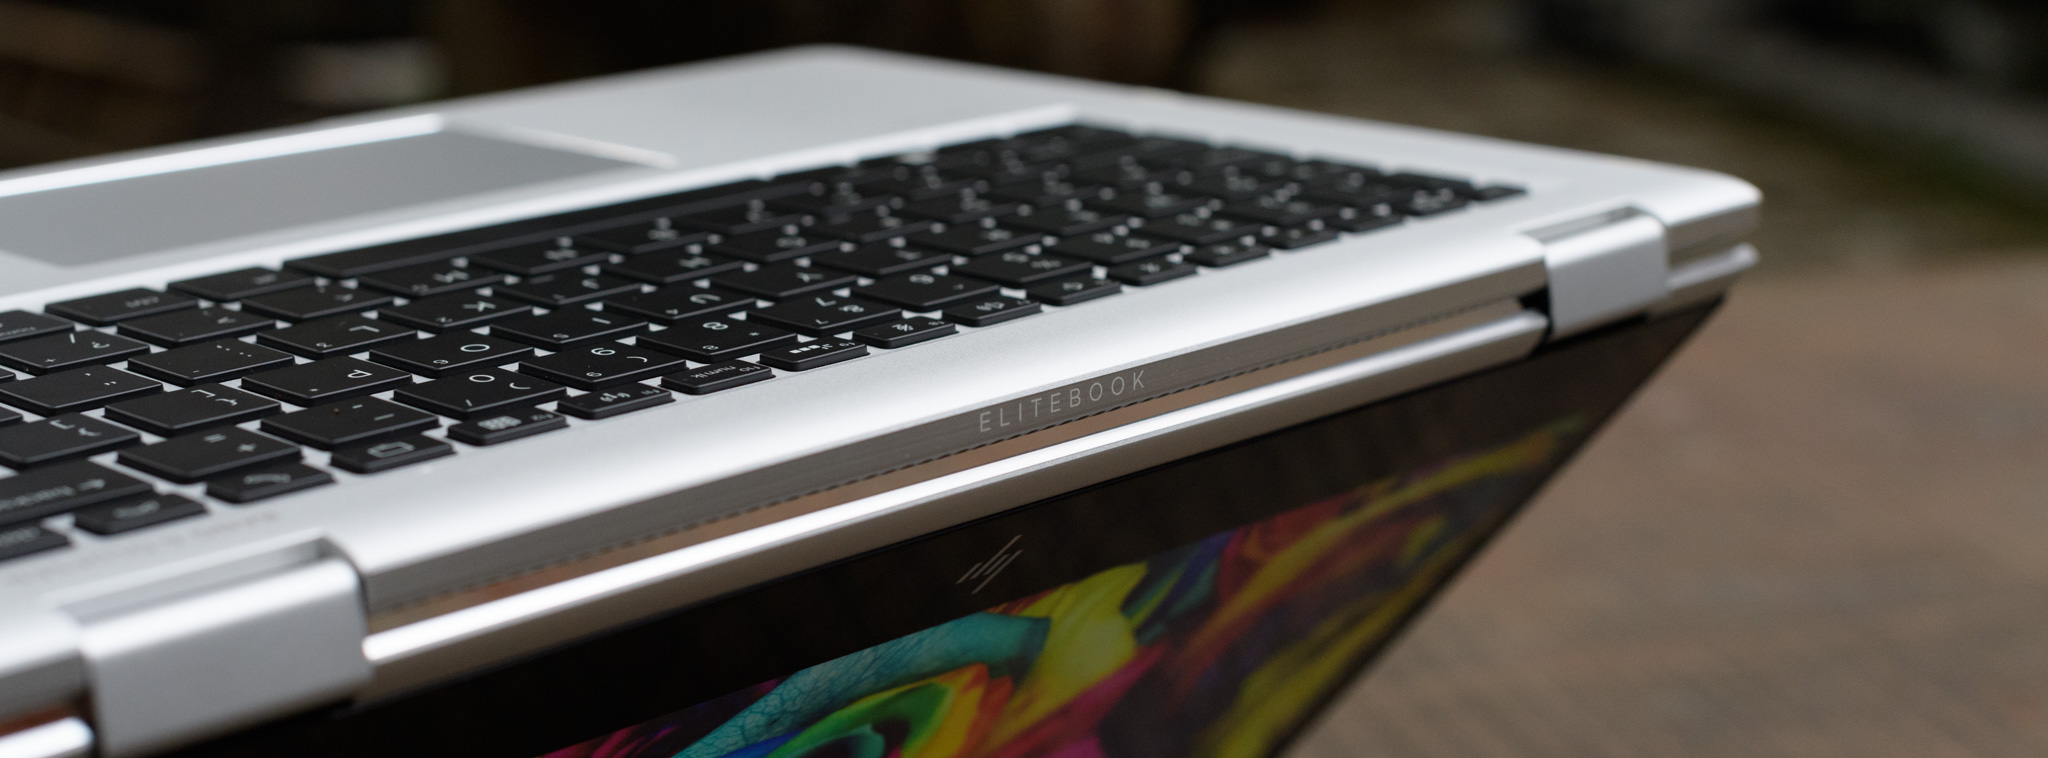 Đánh giá HP EliteBook x360 - Màn hình xoay 360 độ, chú trọng bảo mật, giá 41,9 triệu đồng